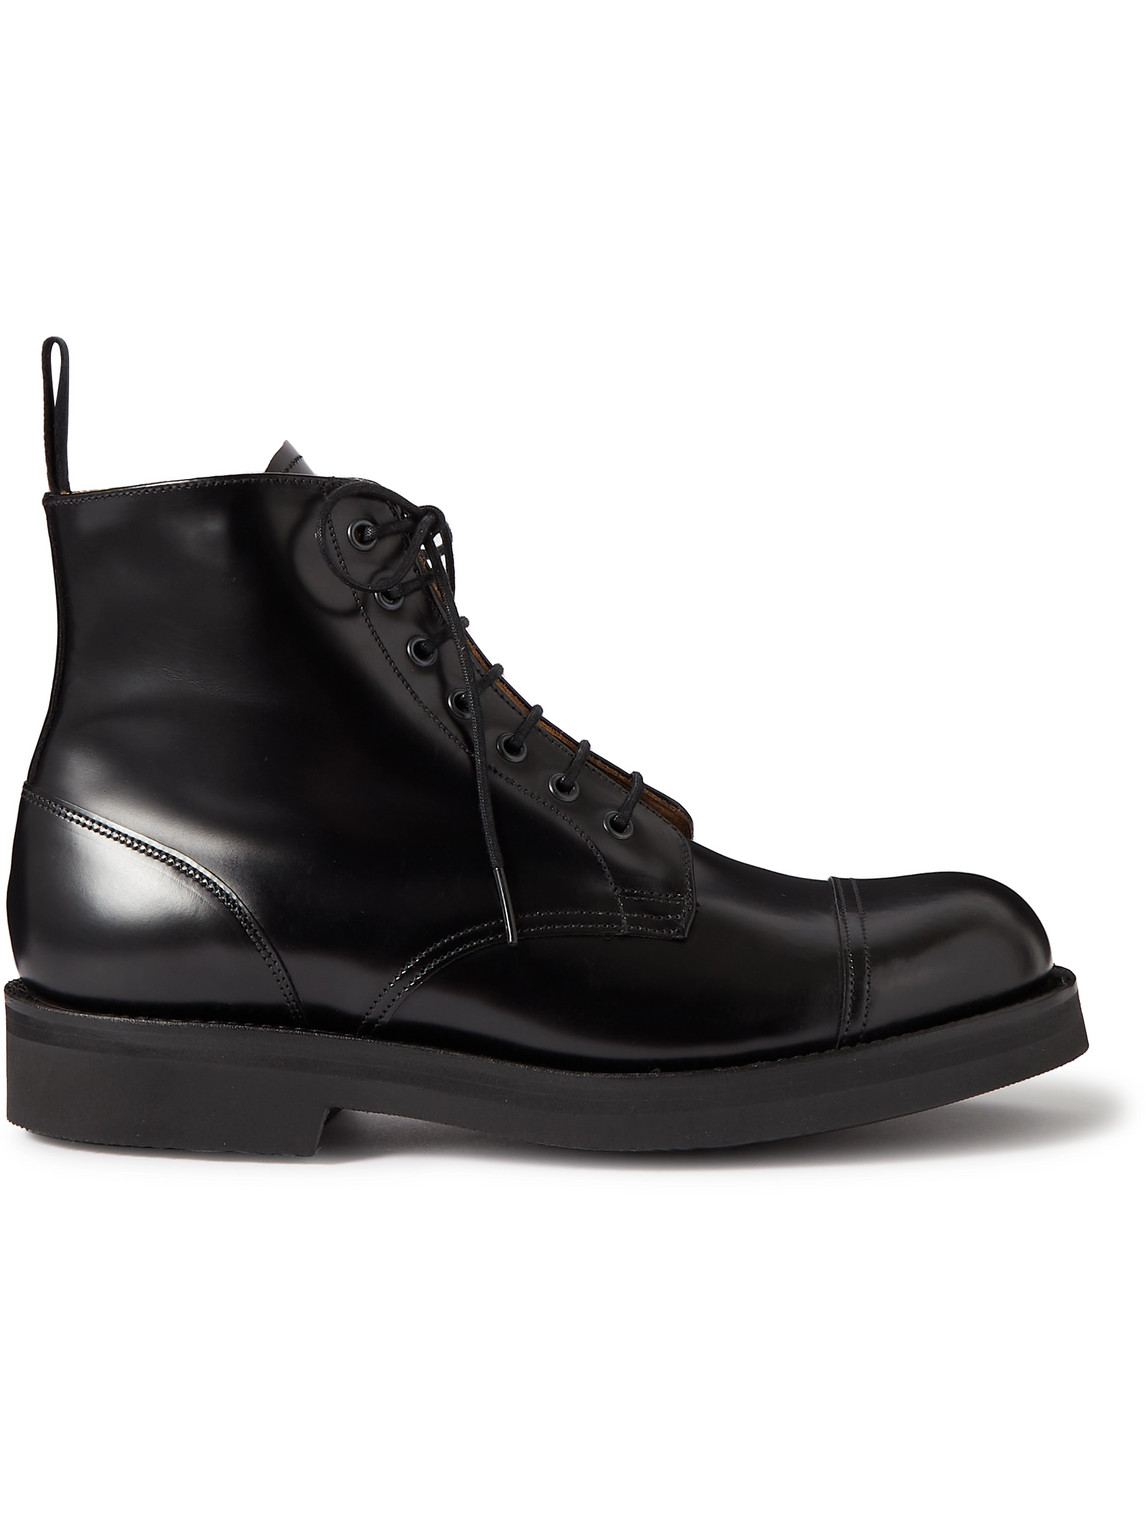 Grenson Black Desmond Leather Derby Boots